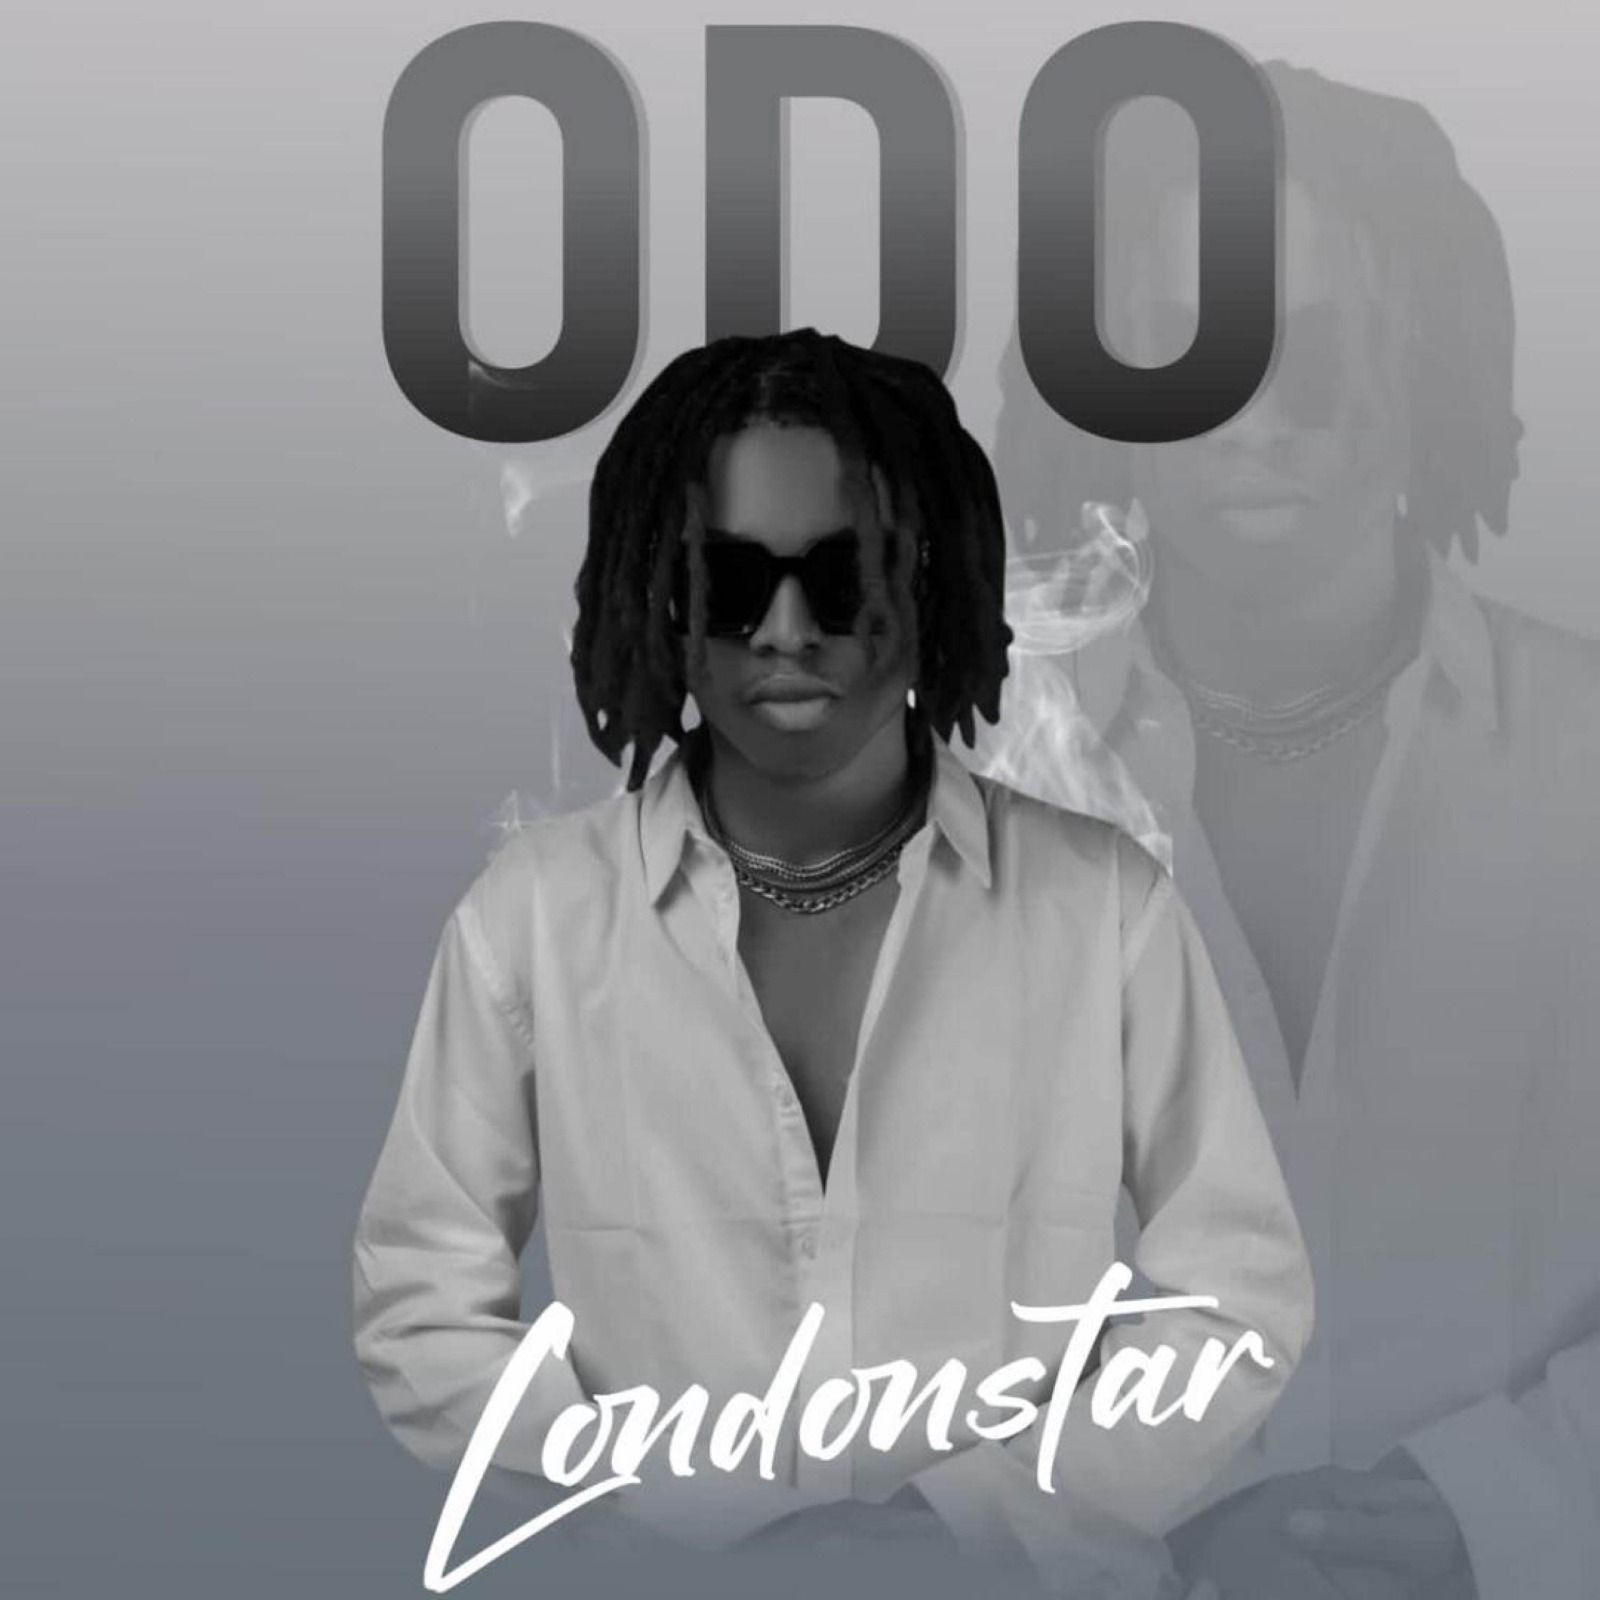 Londonstar - ODO